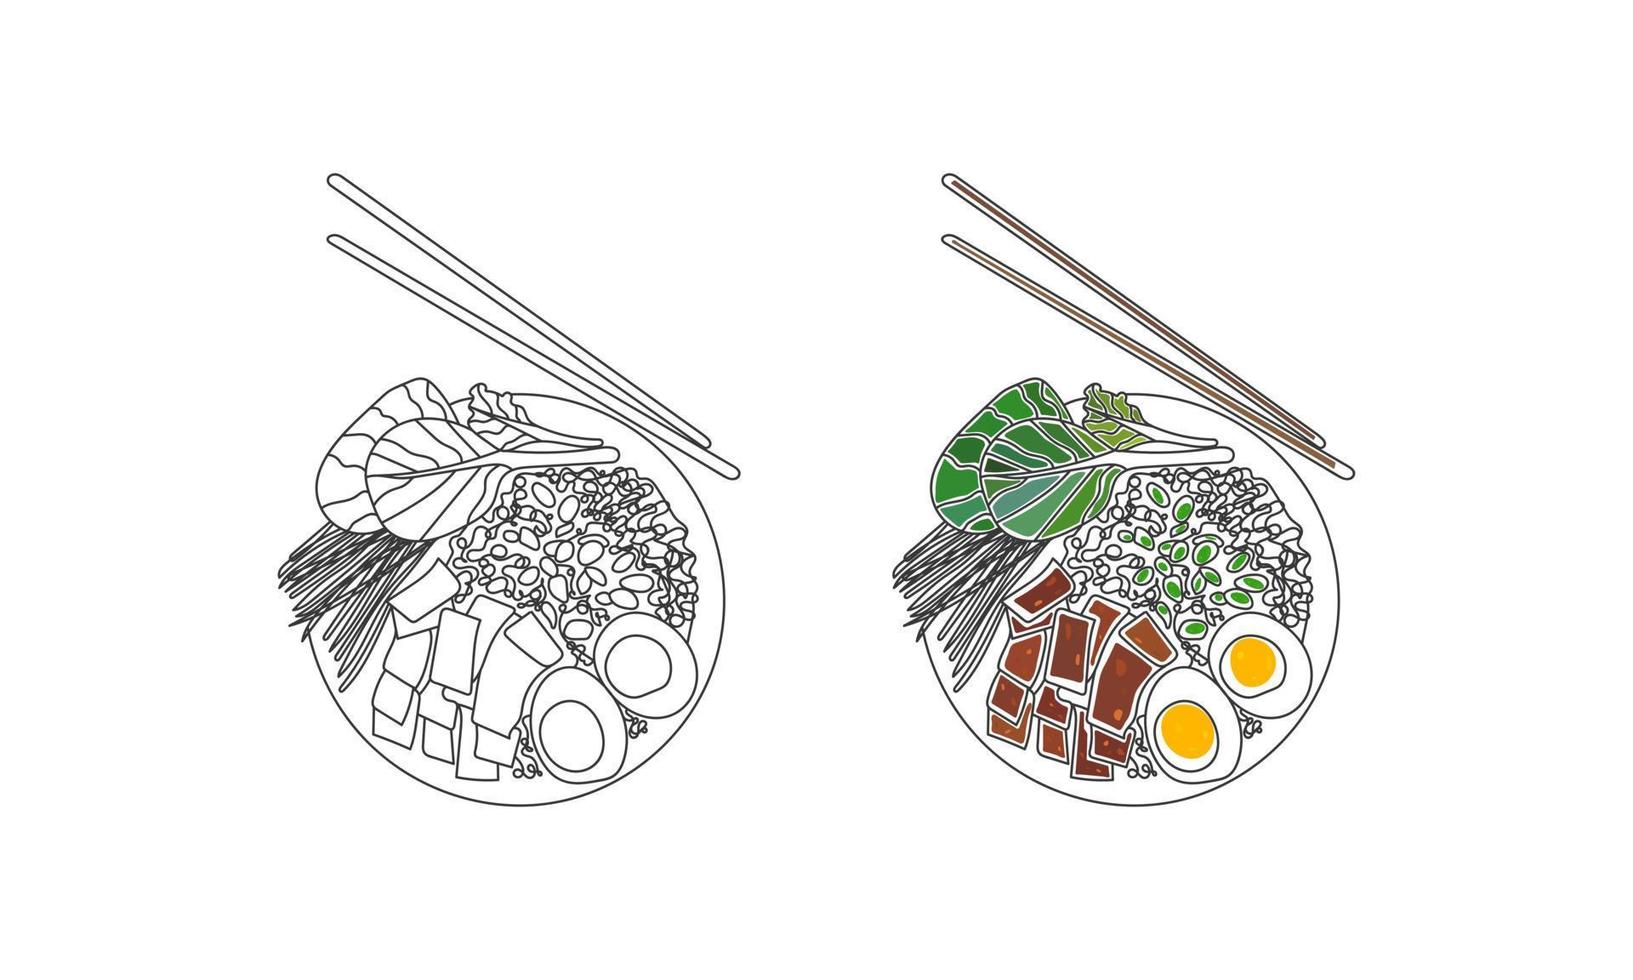 Food line art design vector illustration.